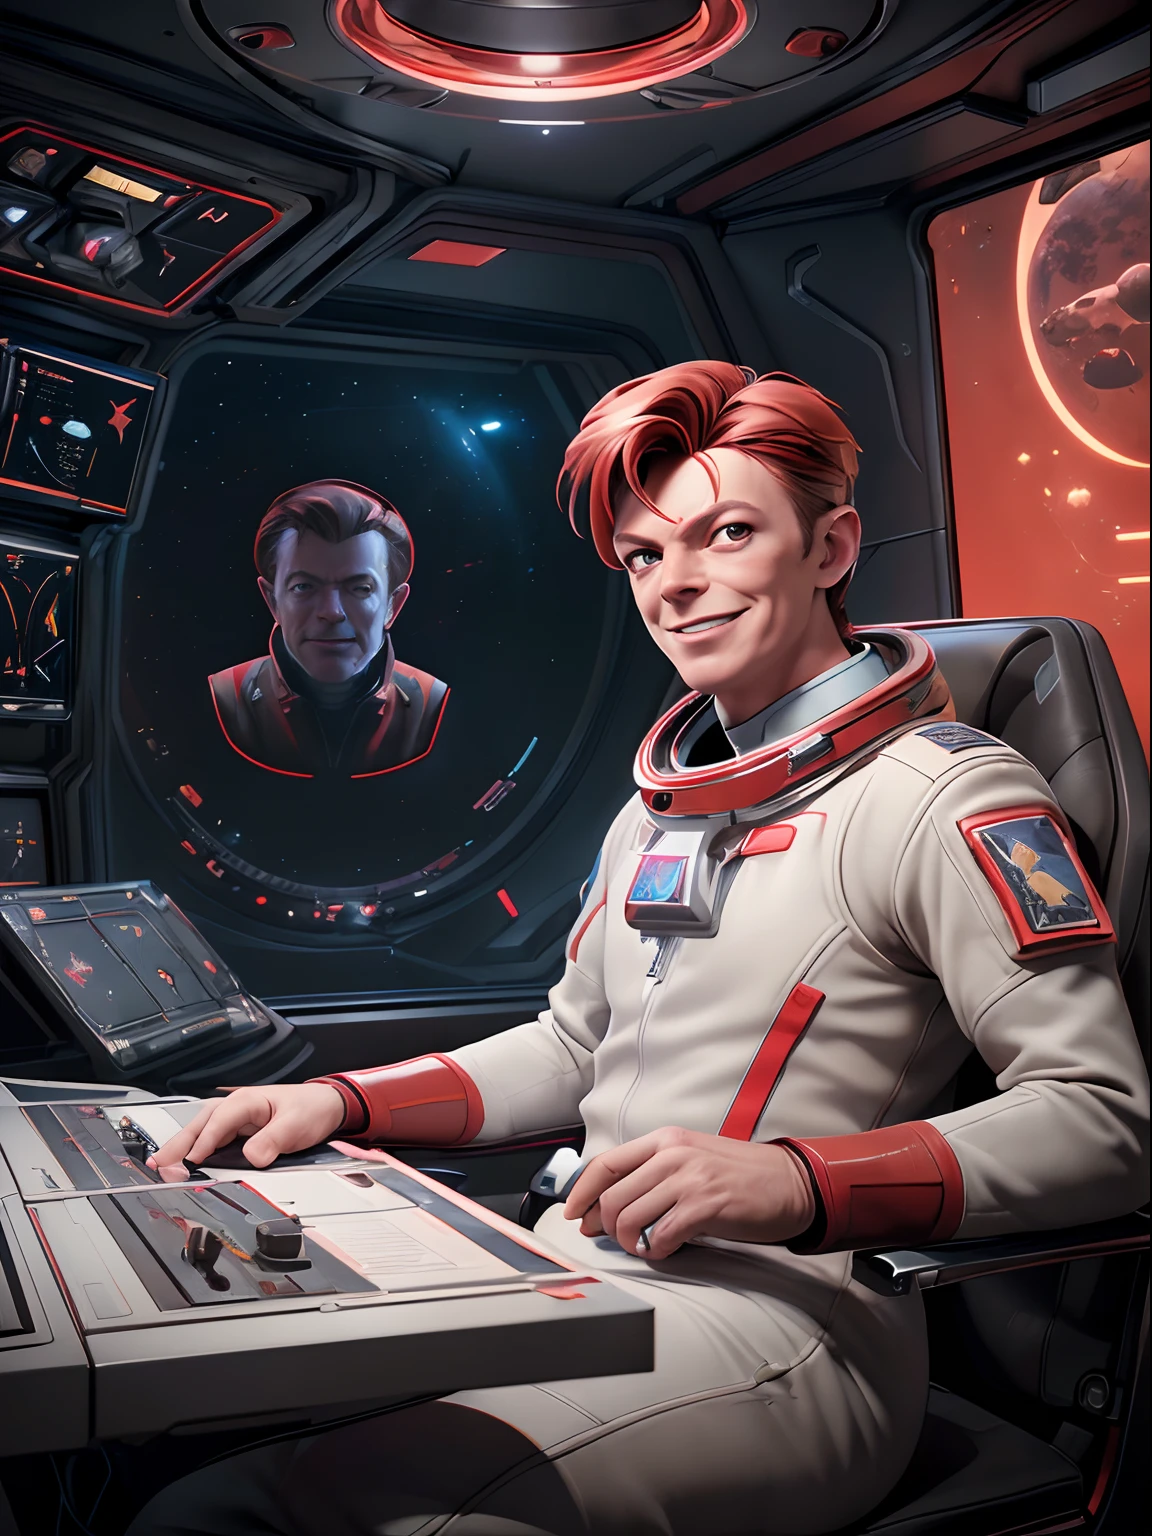 (Obra de arte, melhor qualidade, ilustração, Motor irreal 5, arte oficial:1.3), Esquema de cores vermelho rico, Uma imagem de (David Bowie) como o sorridente Major Tom, um tecnocrático, onívoro, iridescente, comandante astronauta, (sentado em uma sala de controle de base estelar:1.2),rosto detalhado, detalhes incrivelmente intrincados, absurdos, 8K